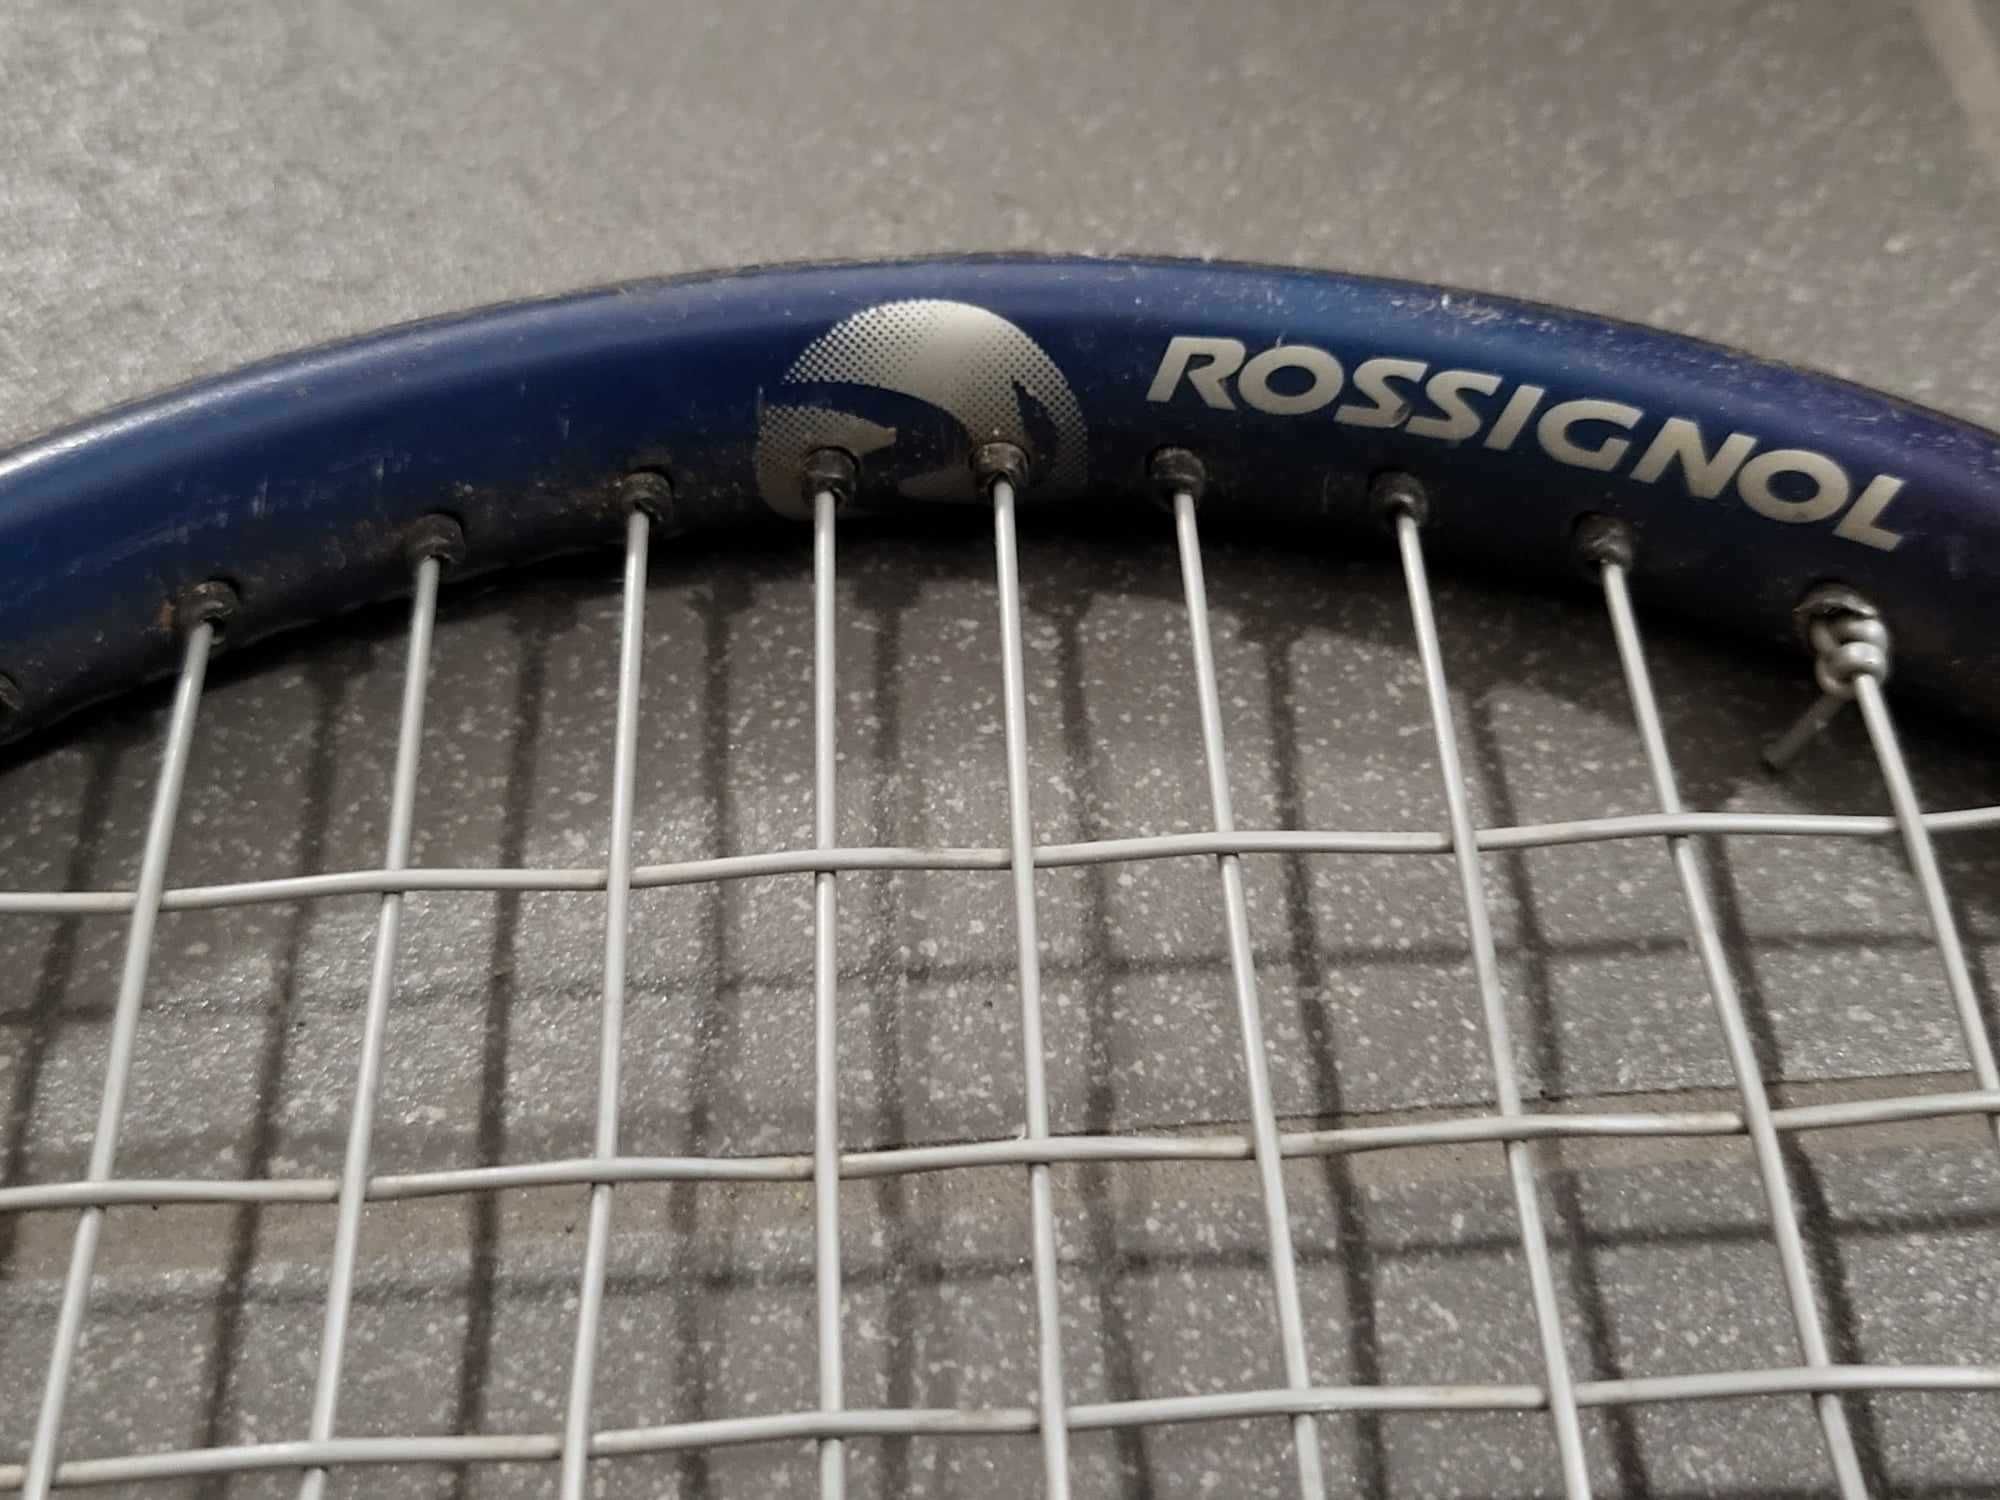 Rakieta tenisowa Rossignol Graphite Bandit używana bardzo lekka